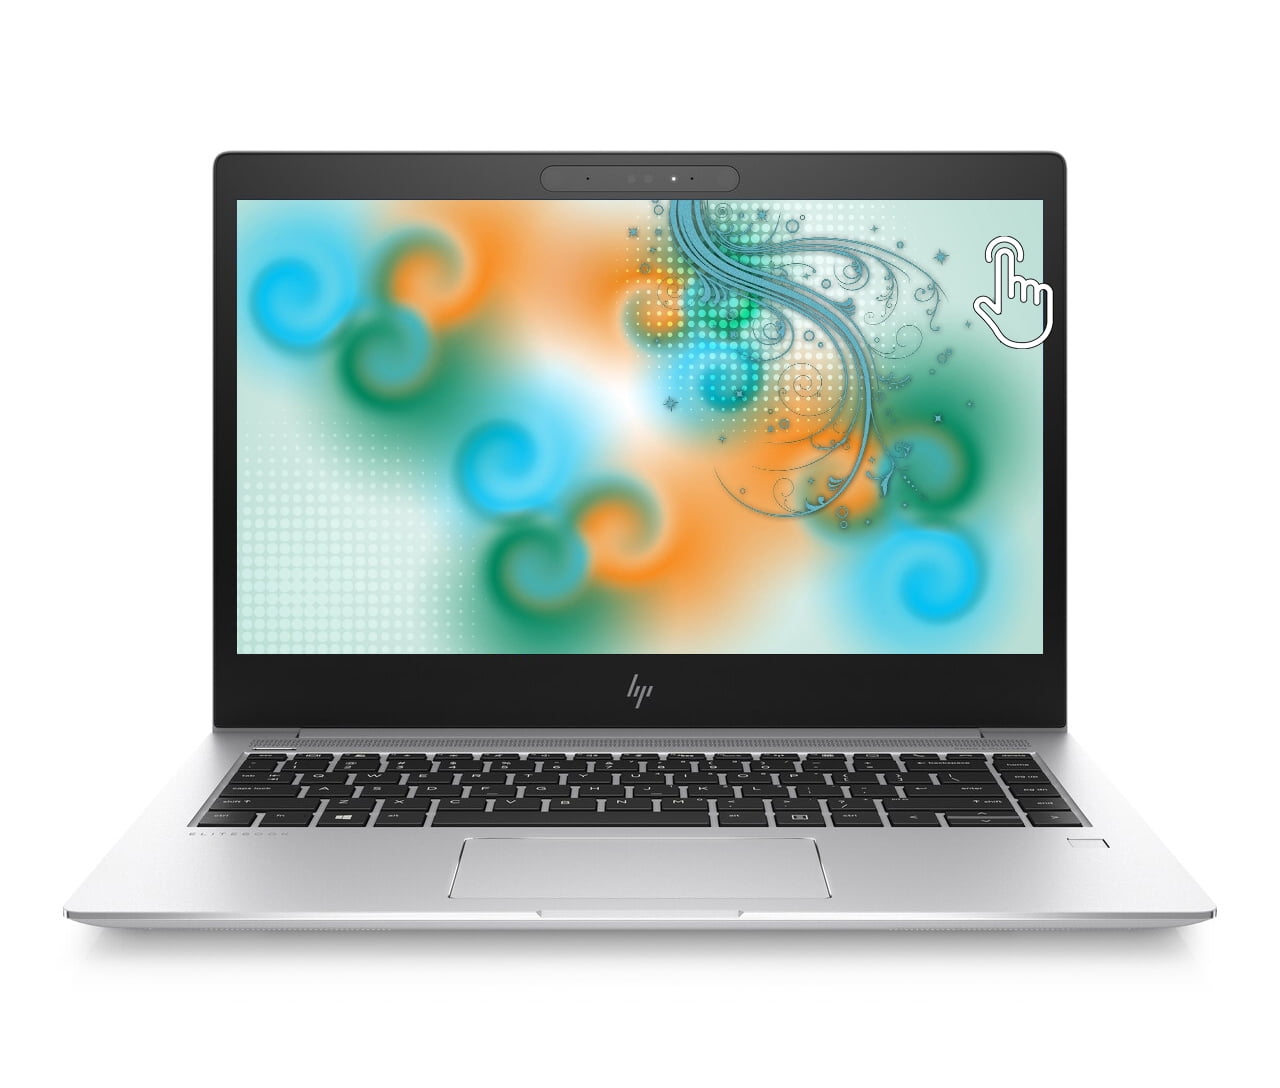 HP EliteBook 840 G5 Touchscreen Intel i7-8650U 1.9GHz, 16GB DDR4